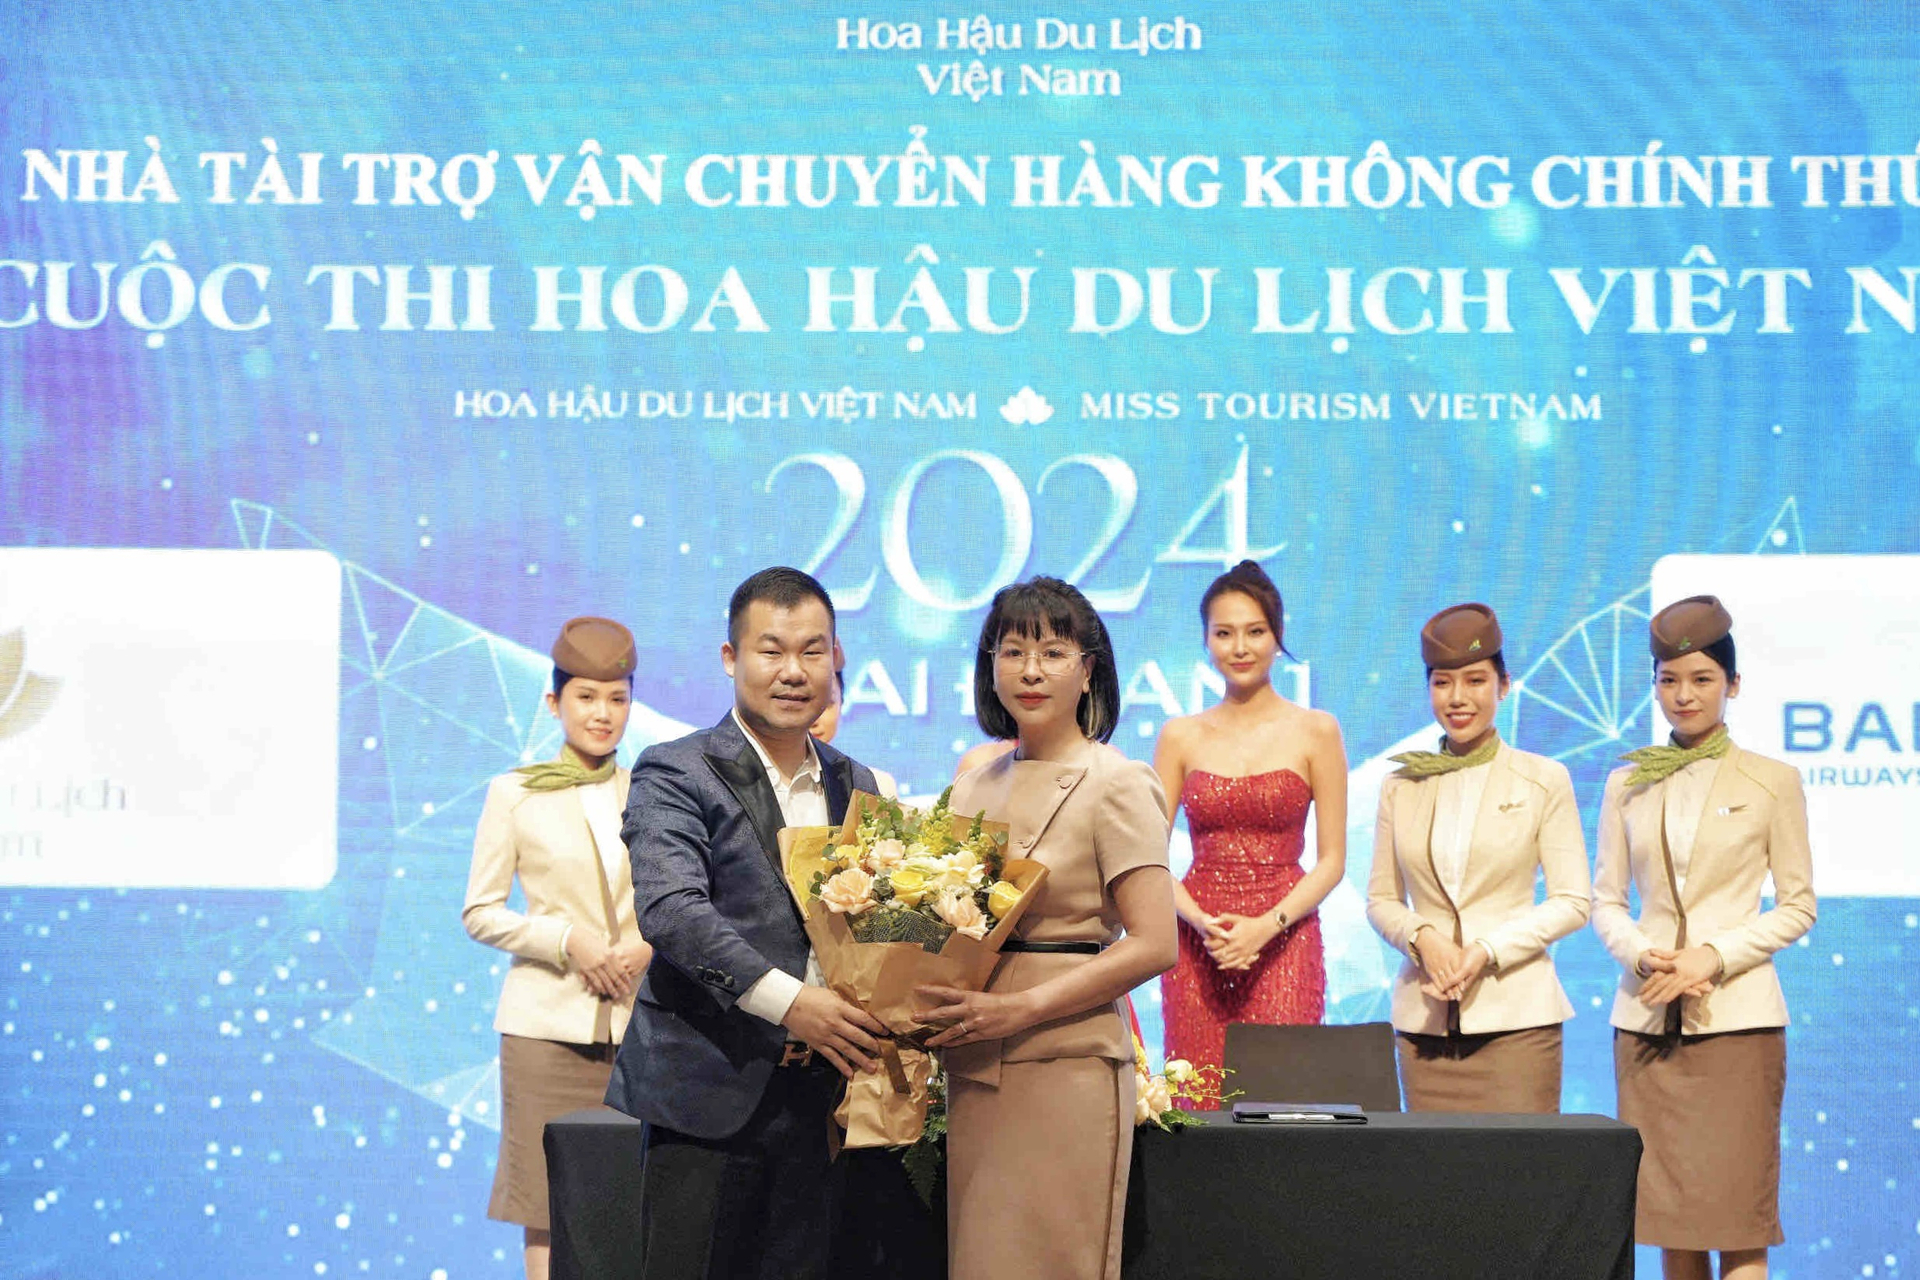 Tài trợ Hoa hậu du lịch Việt Nam 2024 là một trong nhiều nỗ lực đồng hành với ngành du lịch của Bamboo Airways